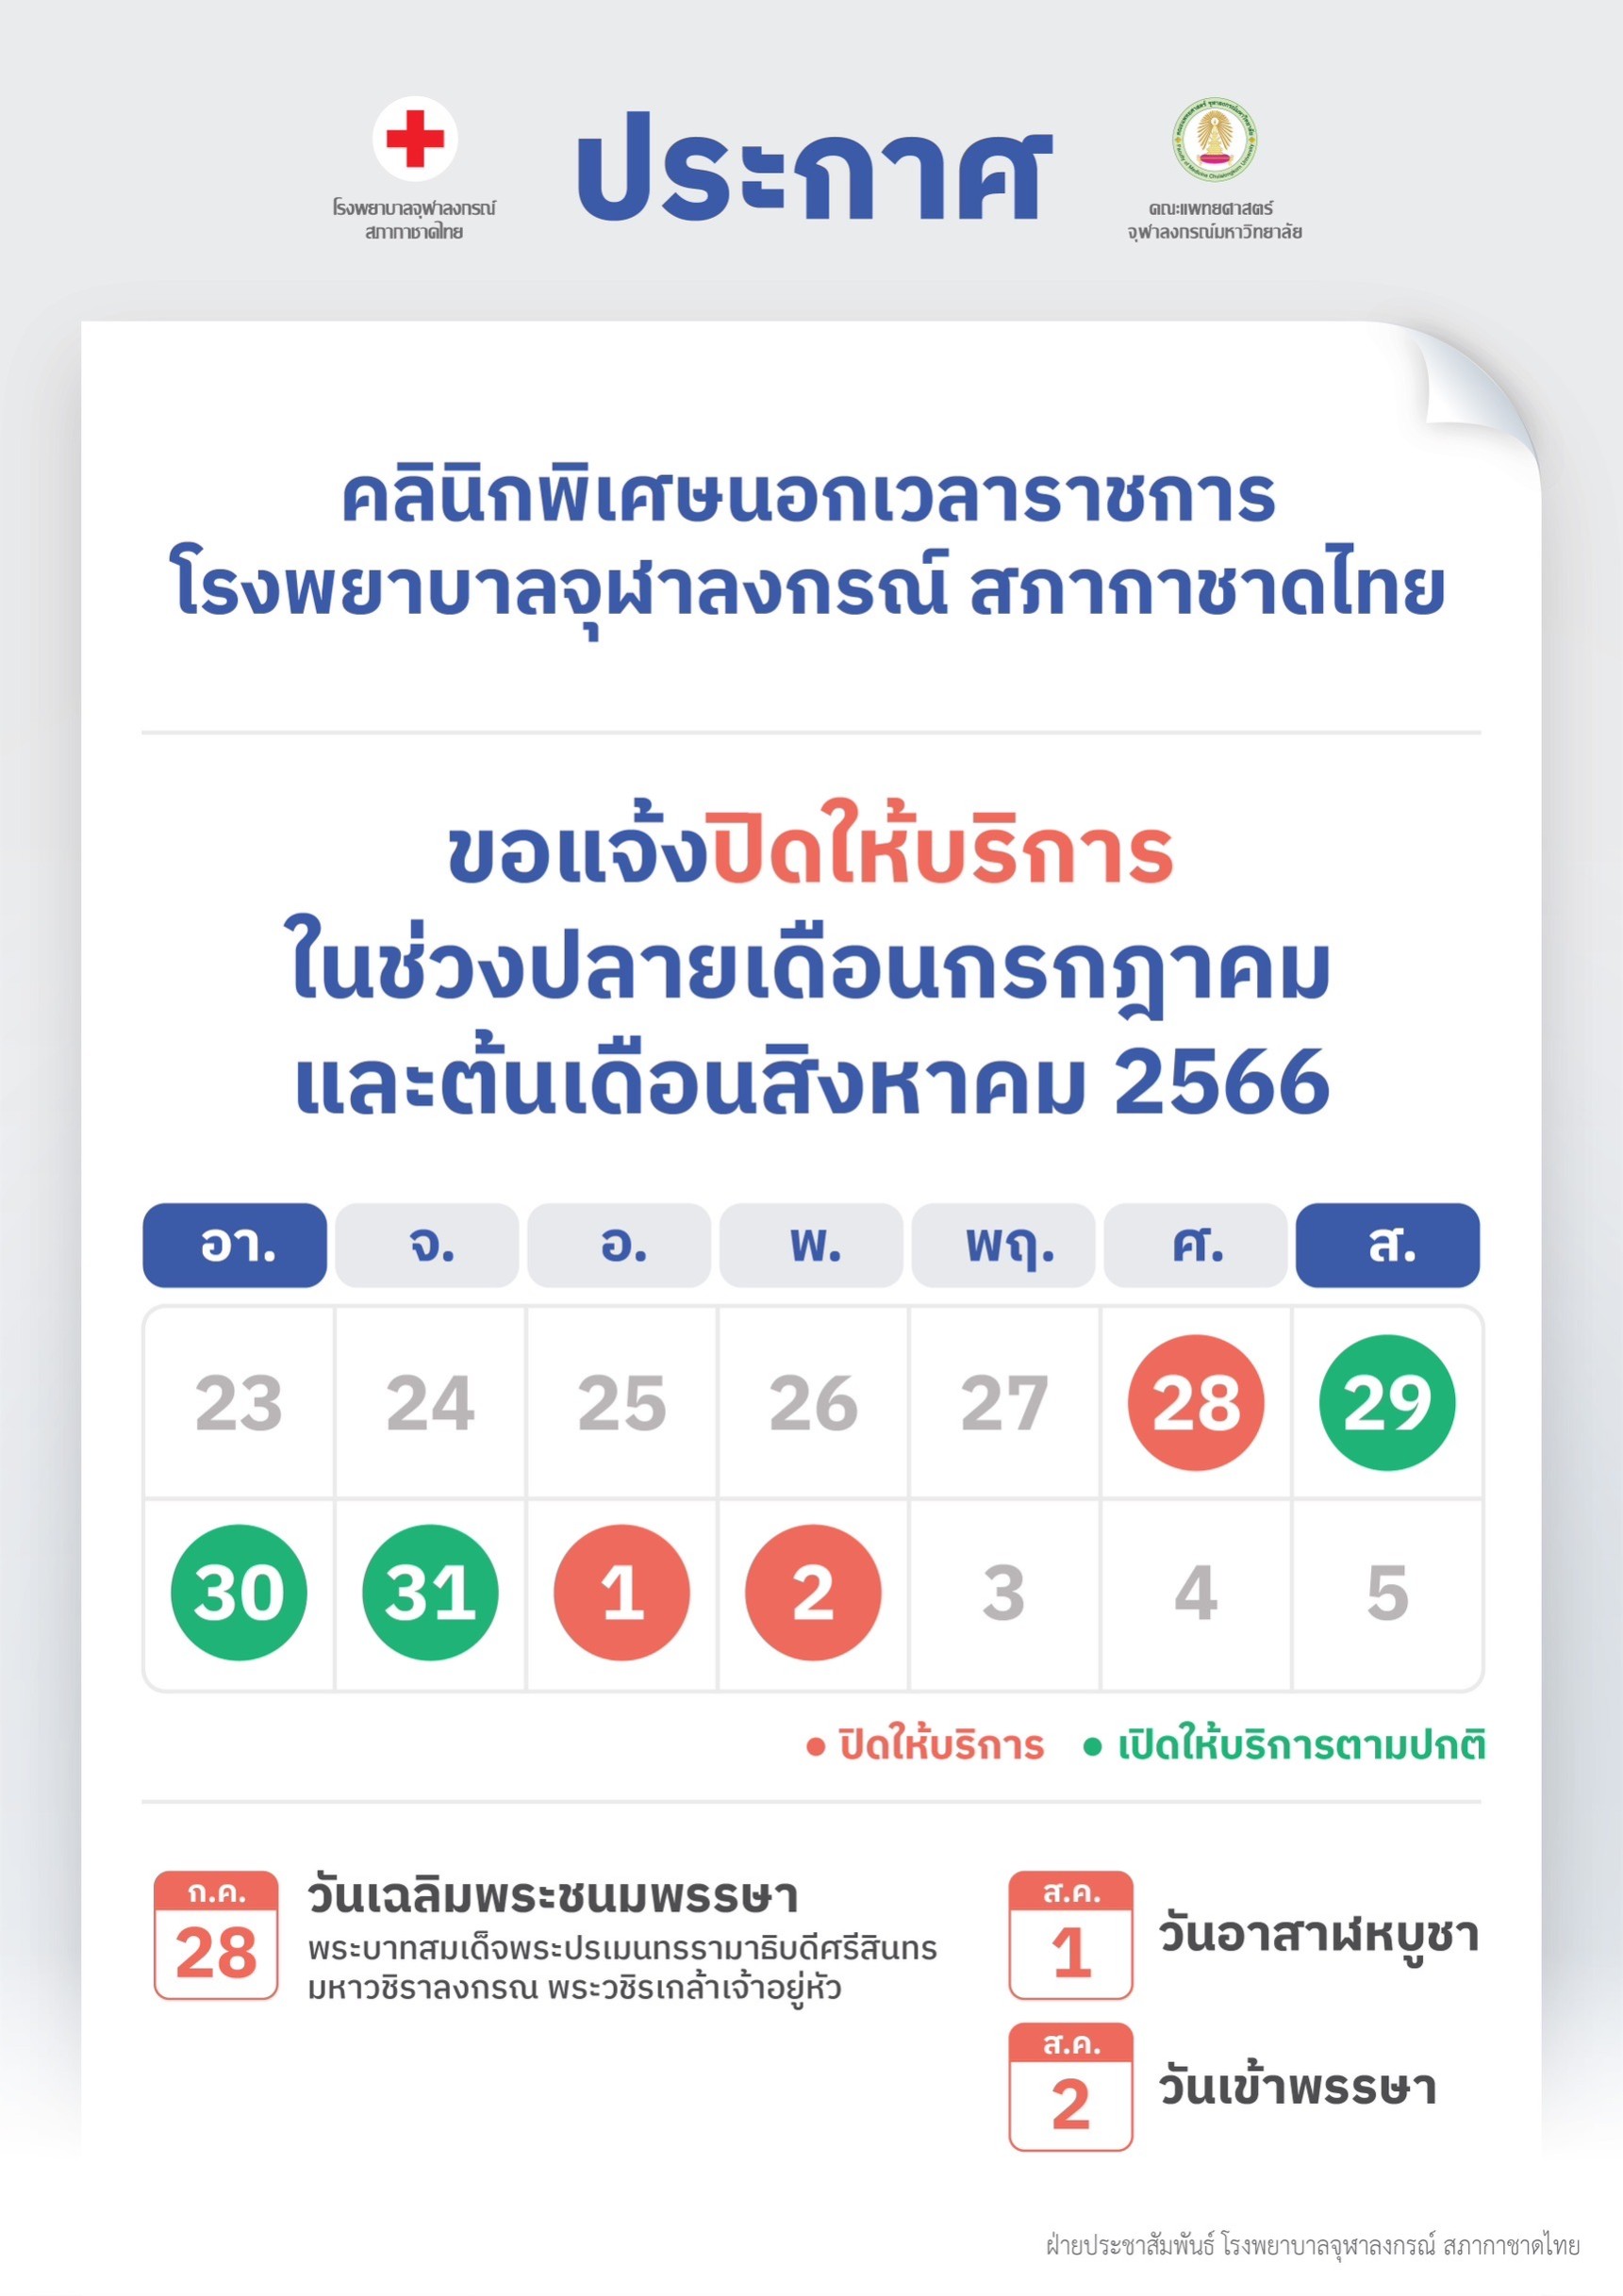 คลินิกพิเศษนอกเวลาราชการ โรงพยาบาลจุฬาลงกรณ์ สภากาชาดไทย ขอแจ้งปิดให้บริการในช่วงปลายเดือนกรกฎาคมและต้นเดือนสิงหาคม 2566